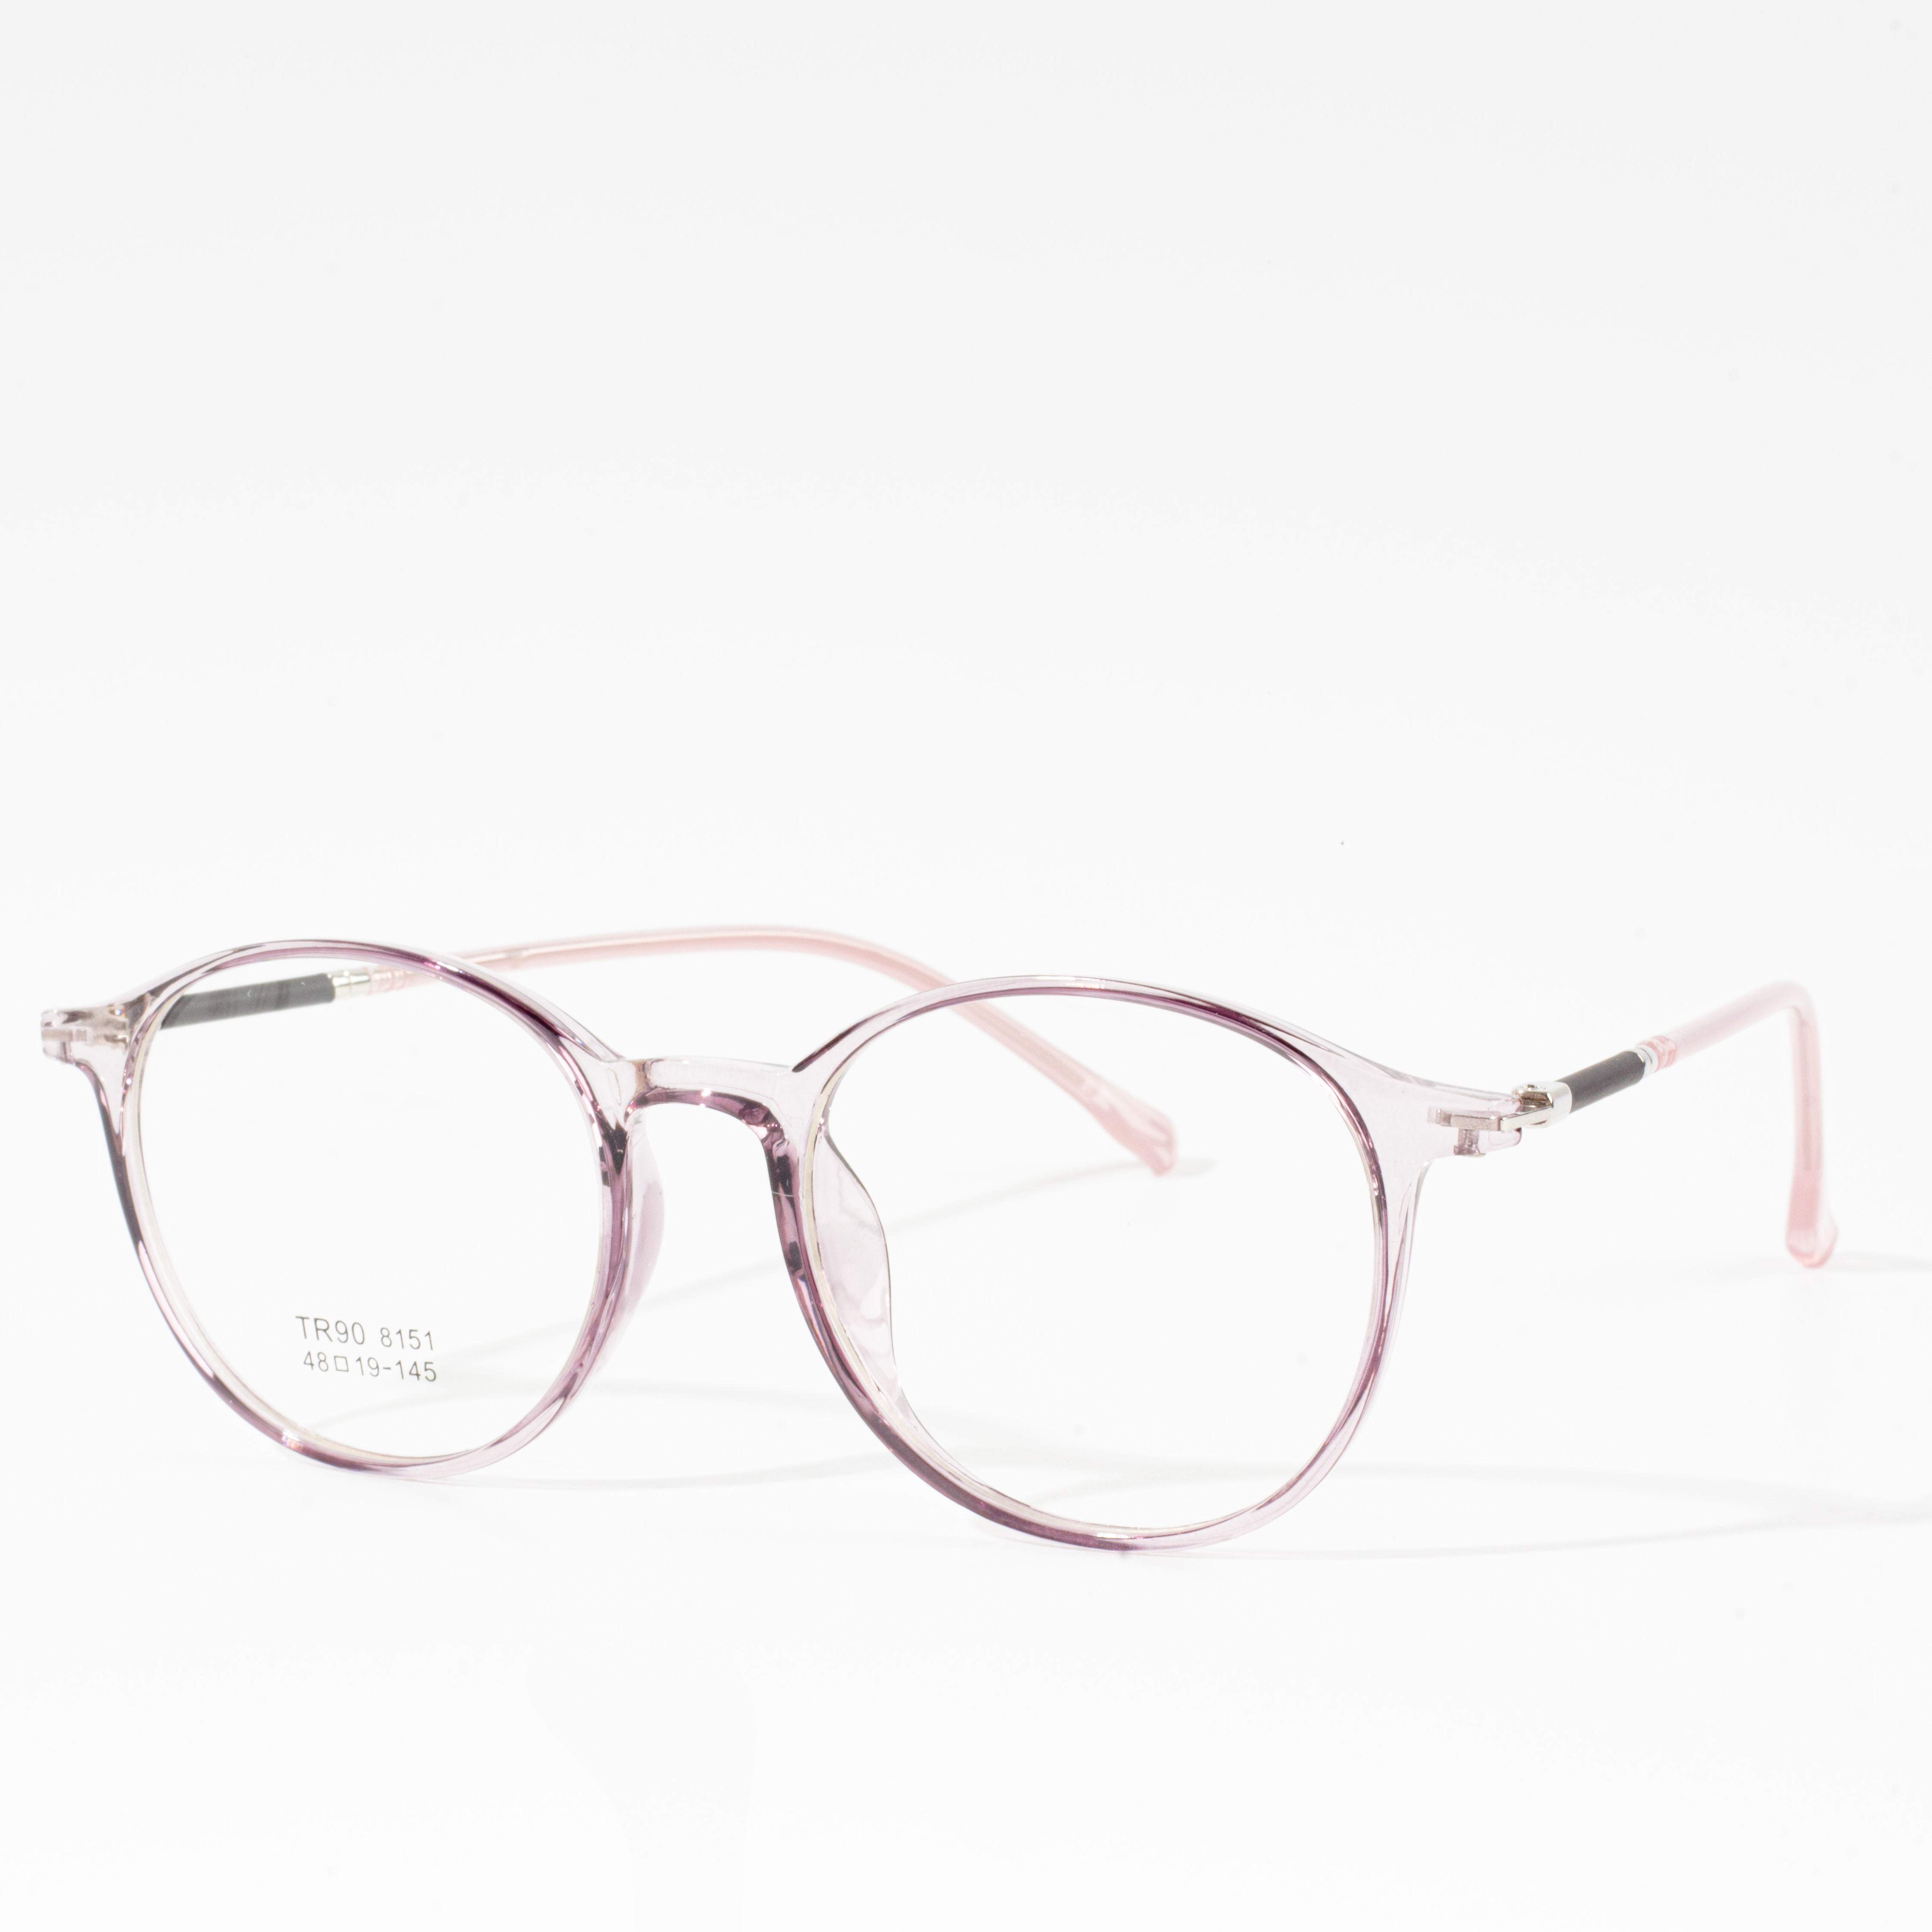 Dizaineriniai vyriški ir moteriški rėmeliai – Eyeglasses.com 广告· https://www.eyeglasses.com/ (888) 896-3885 Parduotuvė dizainerių sukurtus akinių rėmelius iš geriausių pasaulinių prekių ženklų už pusę mažmeninės kainos šiandien.